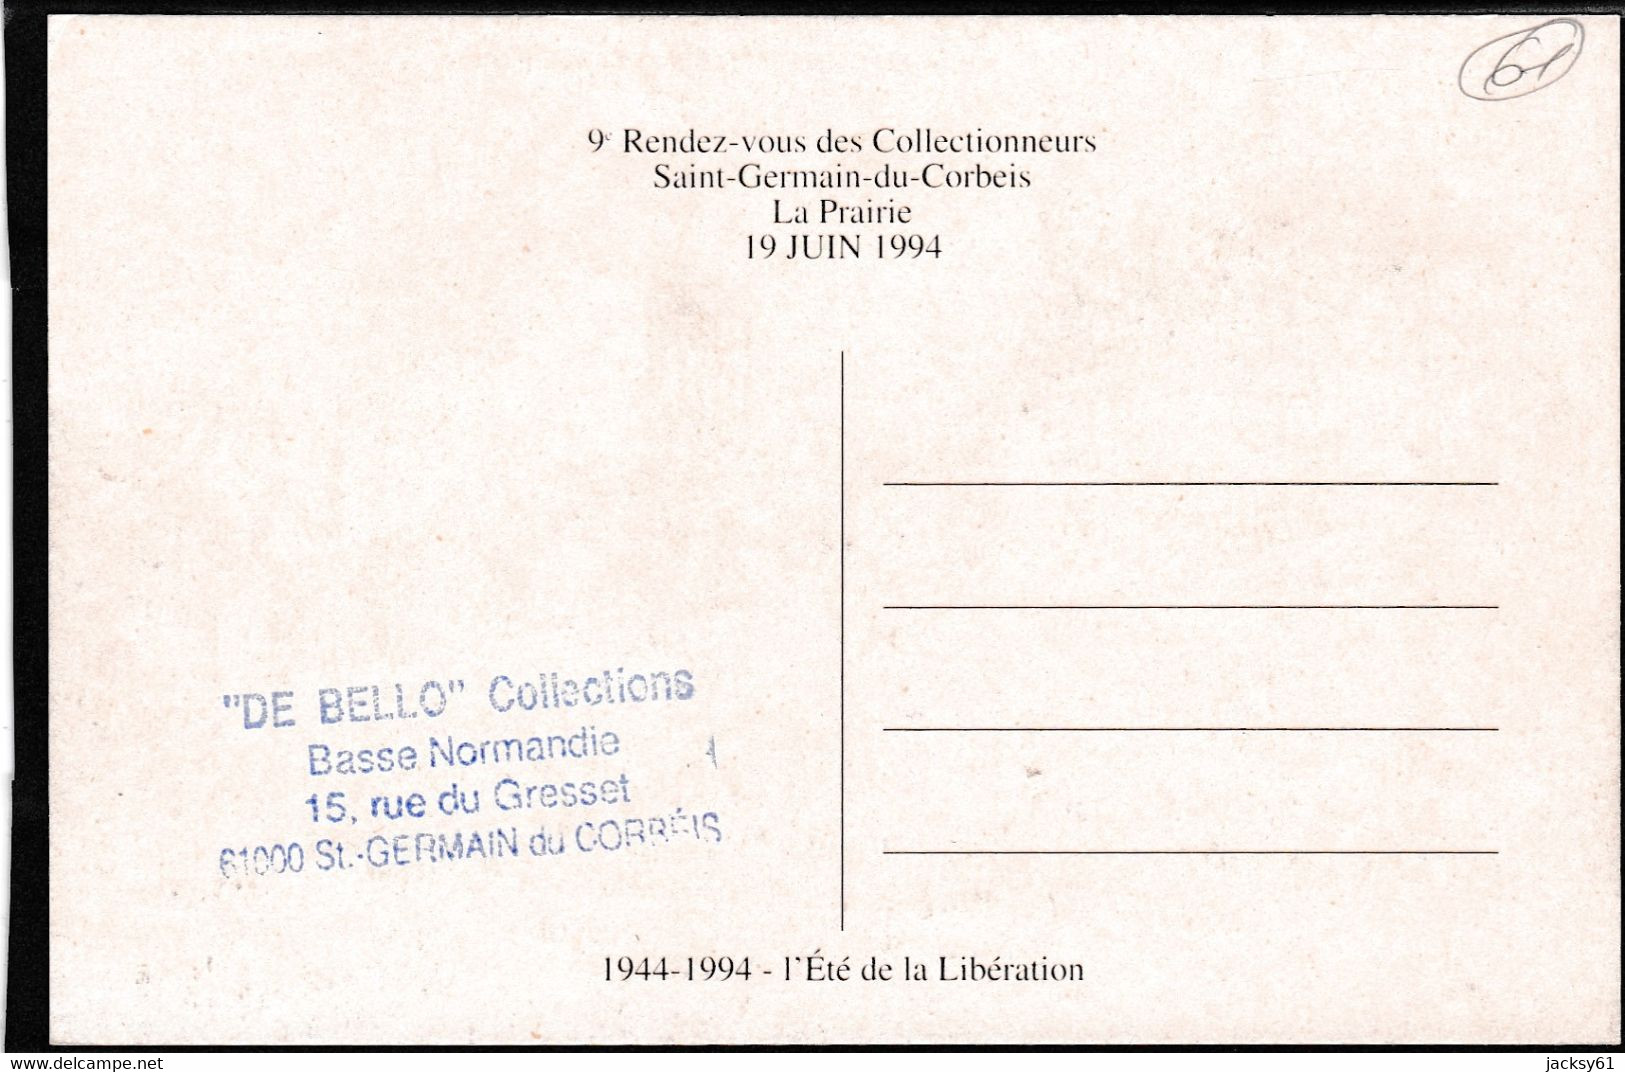 61 - Saint Germain Du Corbéis - 9 ème Rendez Vous Des Collectionneurs, Le 19 Juin 1994 - Bourses & Salons De Collections